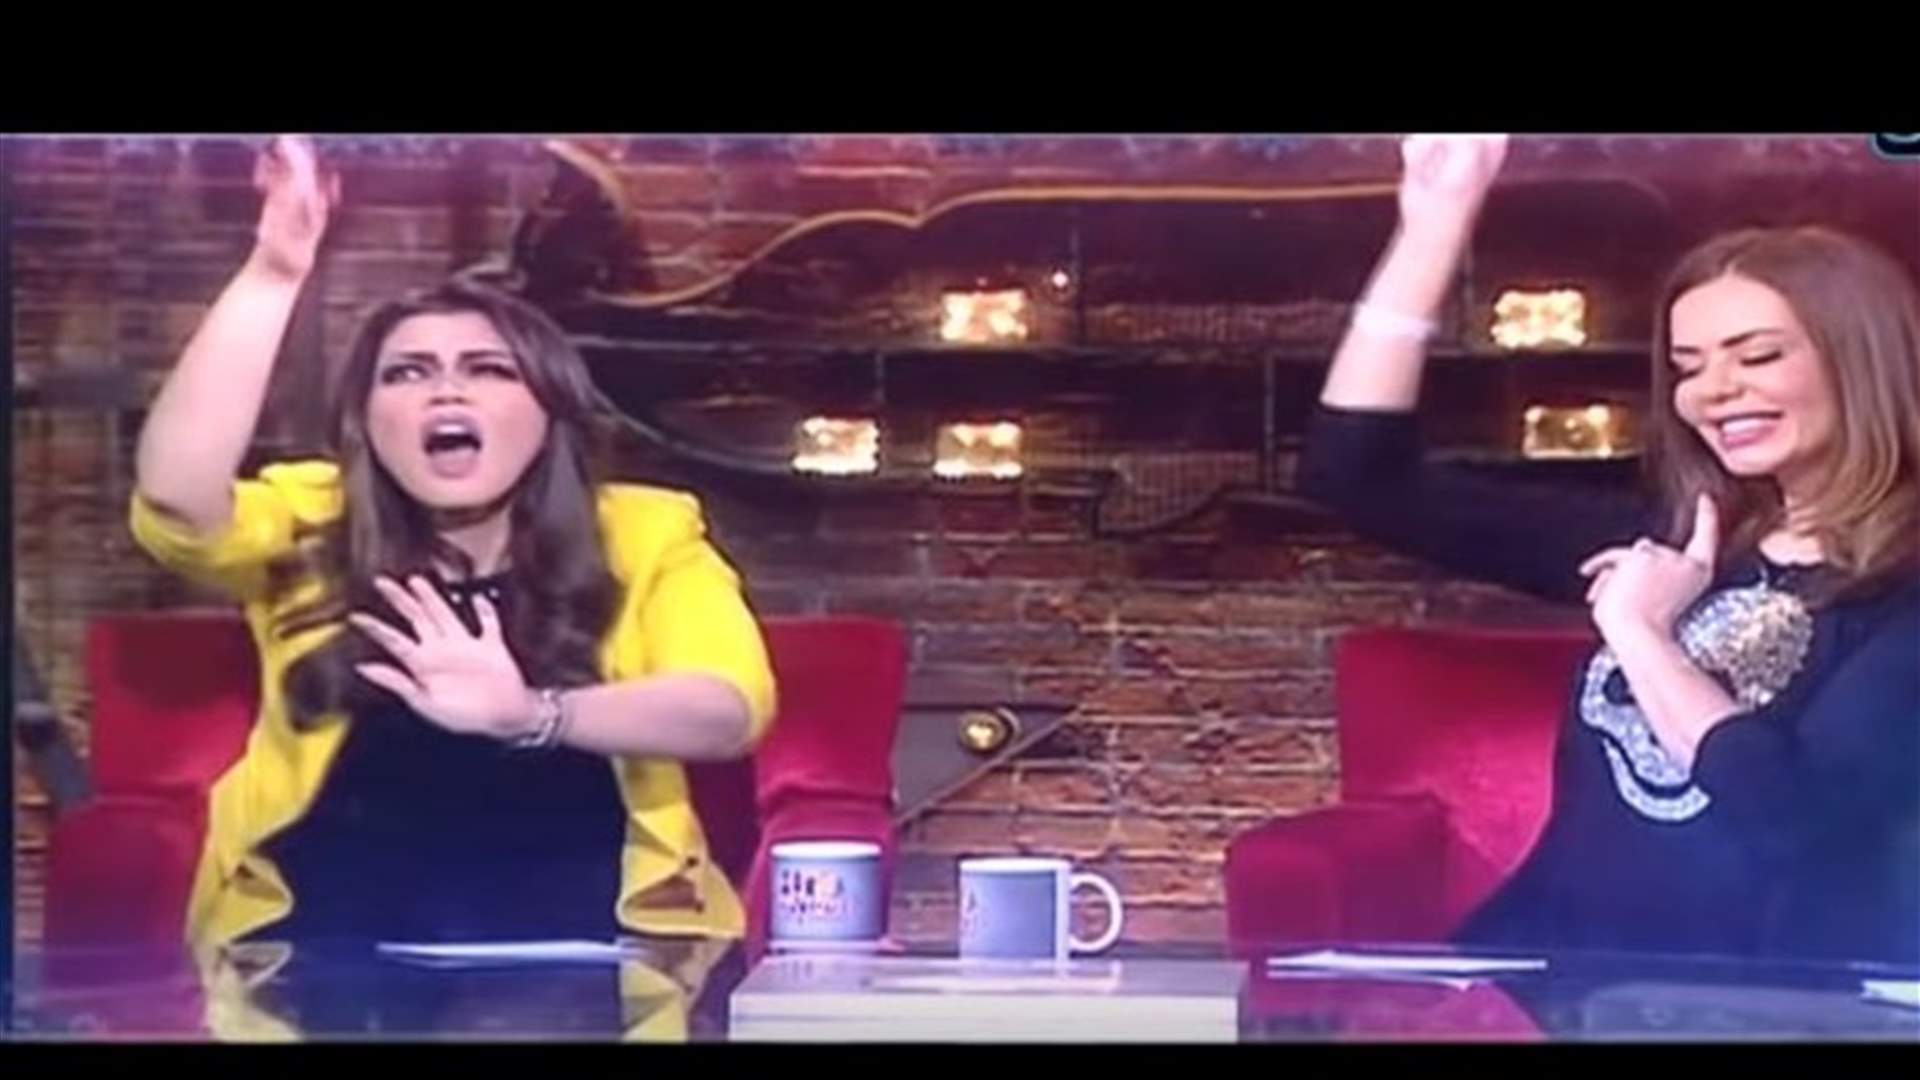 مذيعة مصرية تفقد السيطرة بالرقص على أغنية حسن شاكوش.. والجمهور يسخر منها (فيديو)